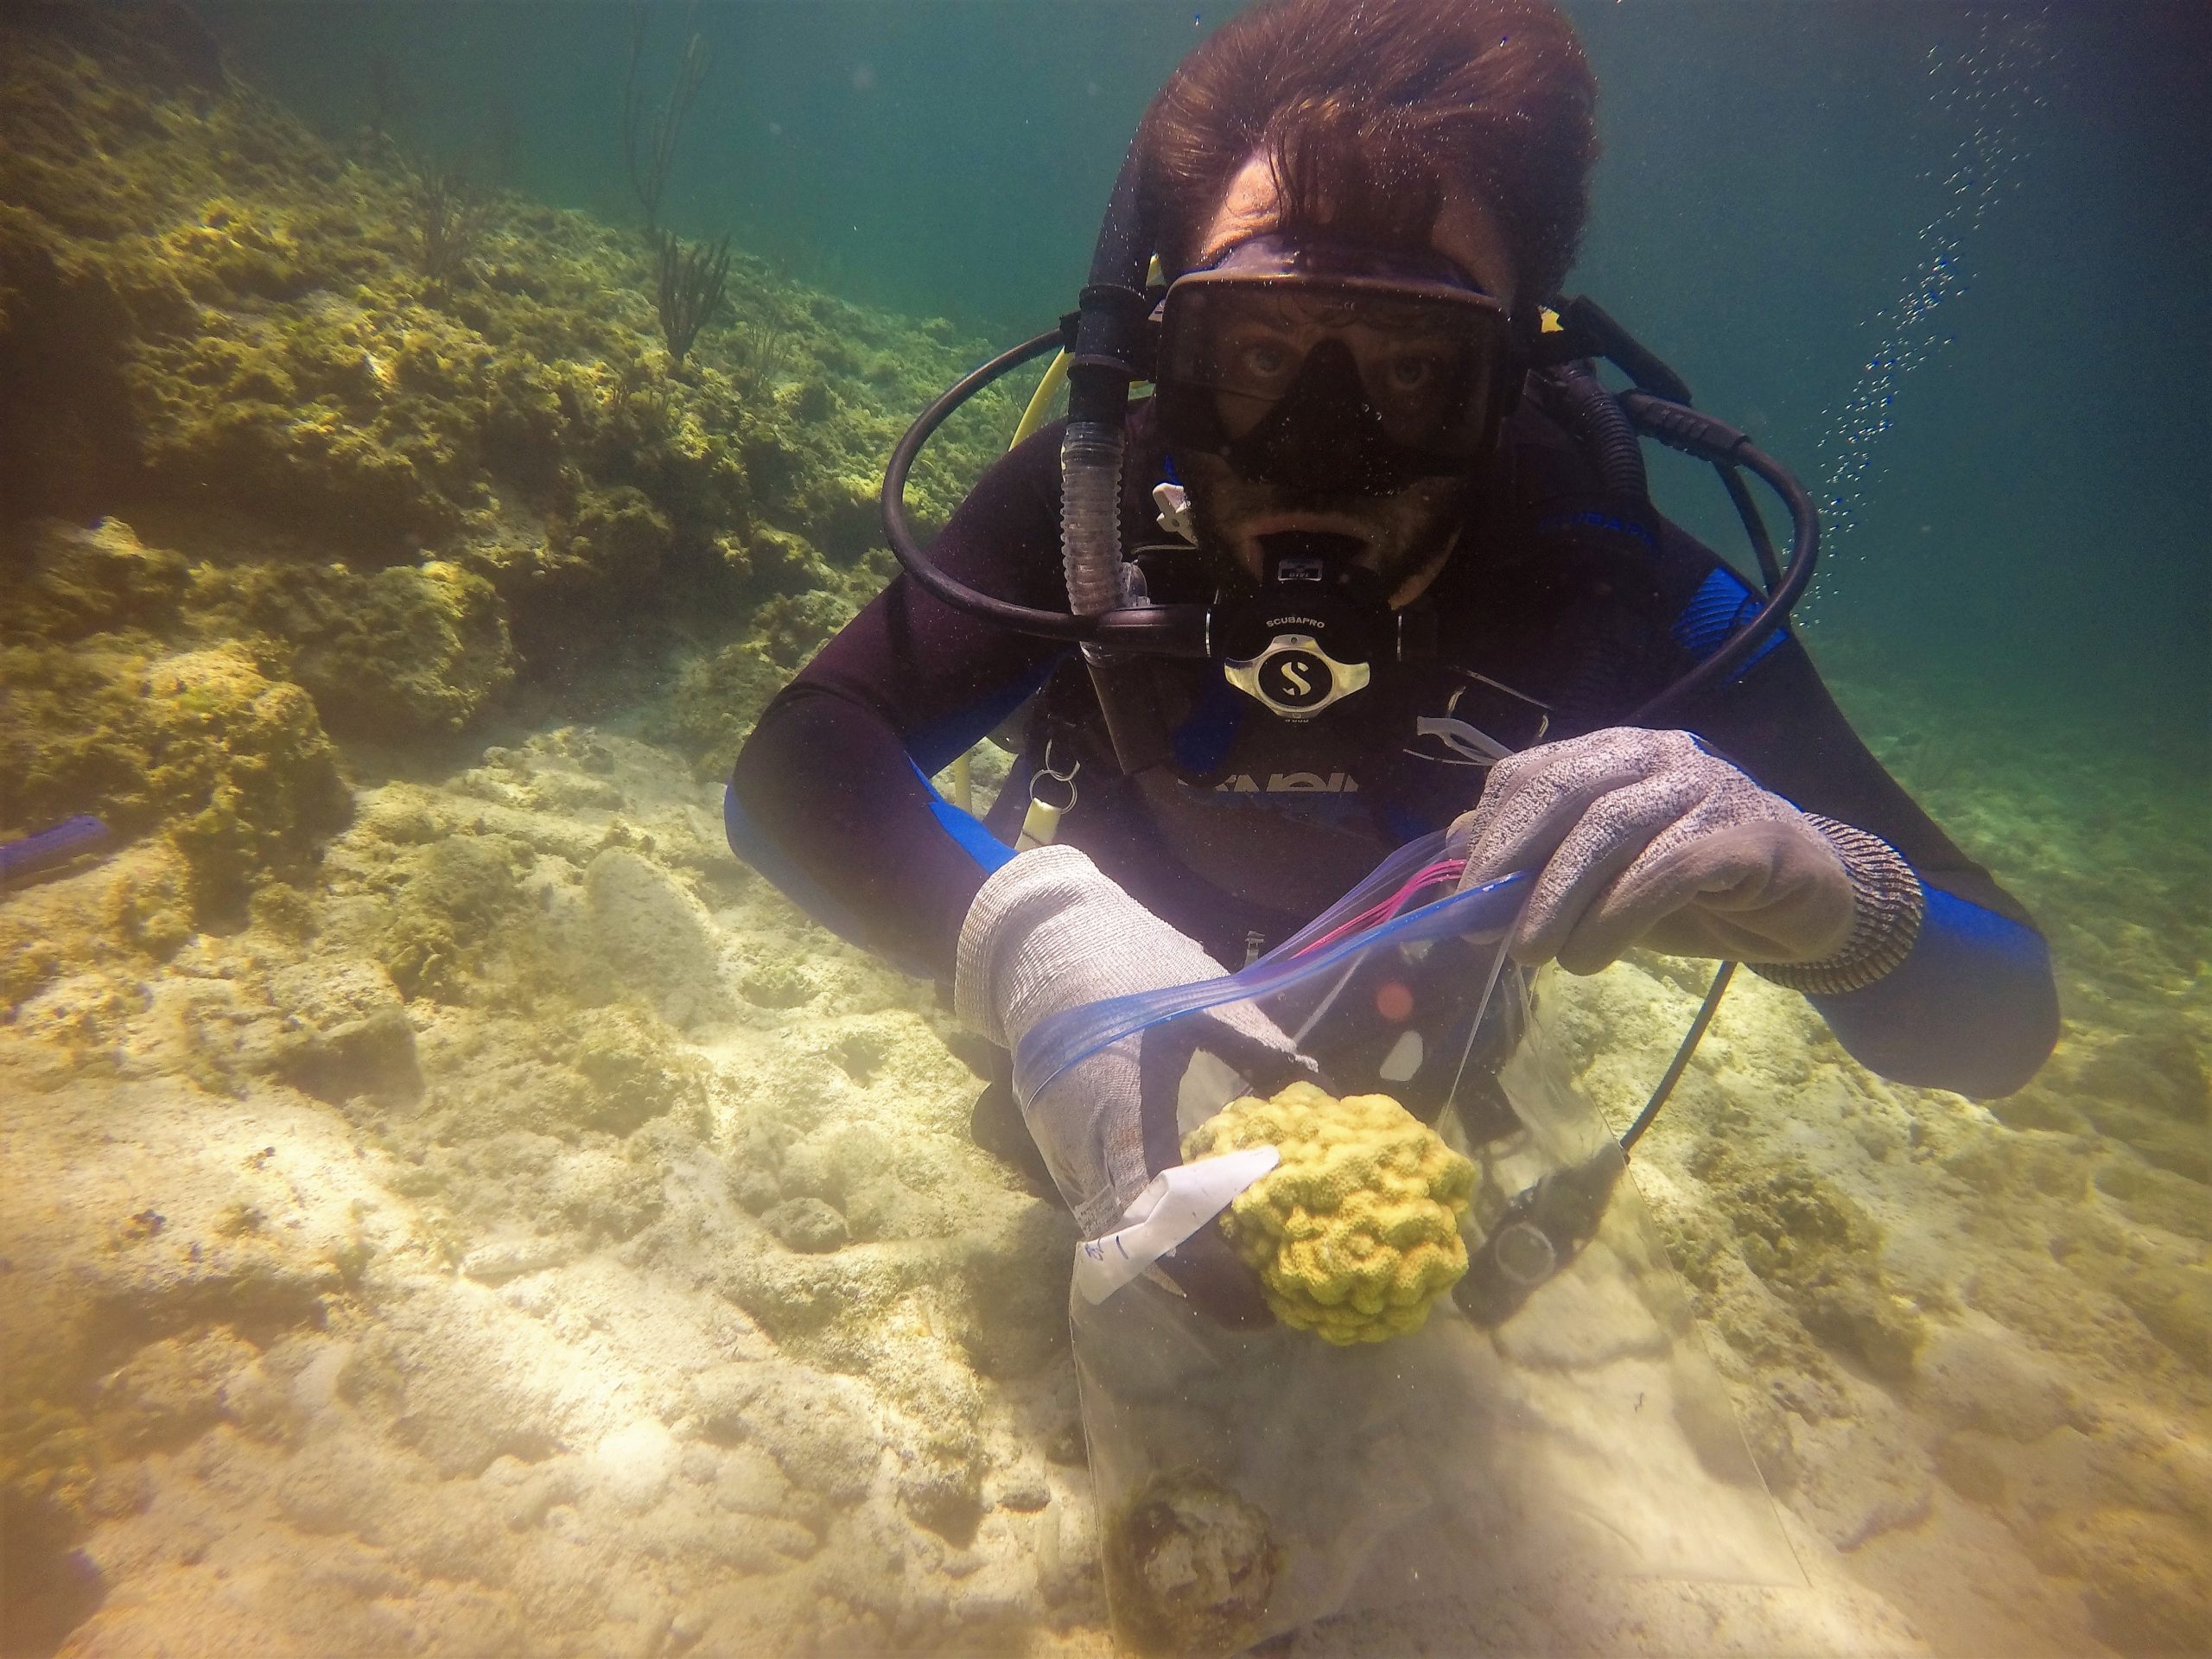 Coral regeneration, Sam Teicher